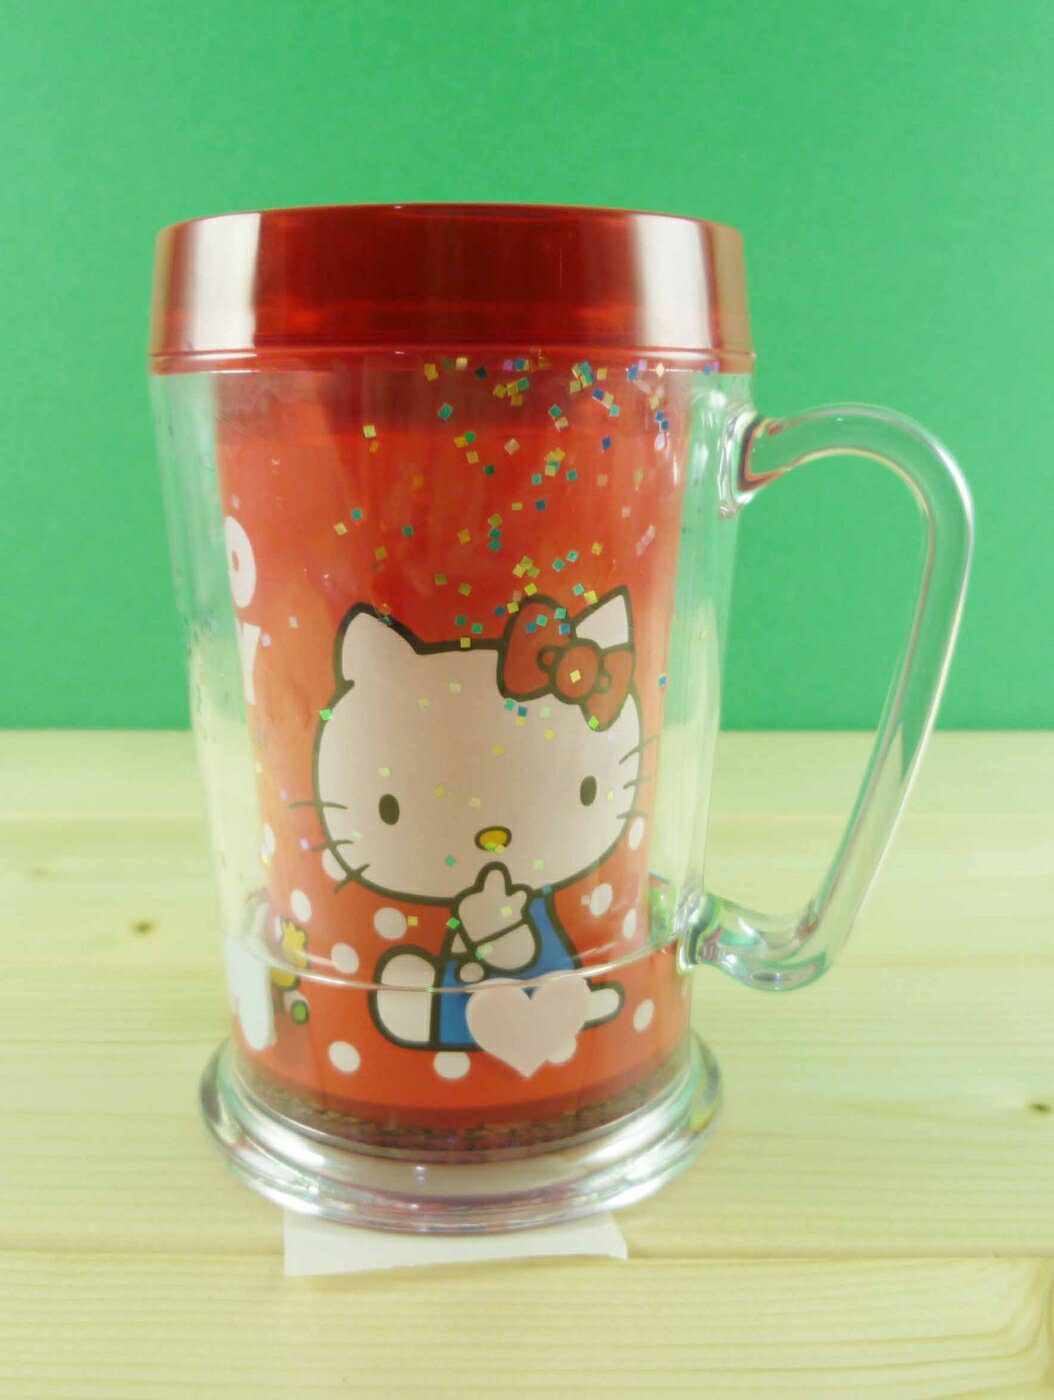 【震撼精品百貨】Hello Kitty 凱蒂貓 造型塑膠杯 紅蘋果 震撼日式精品百貨